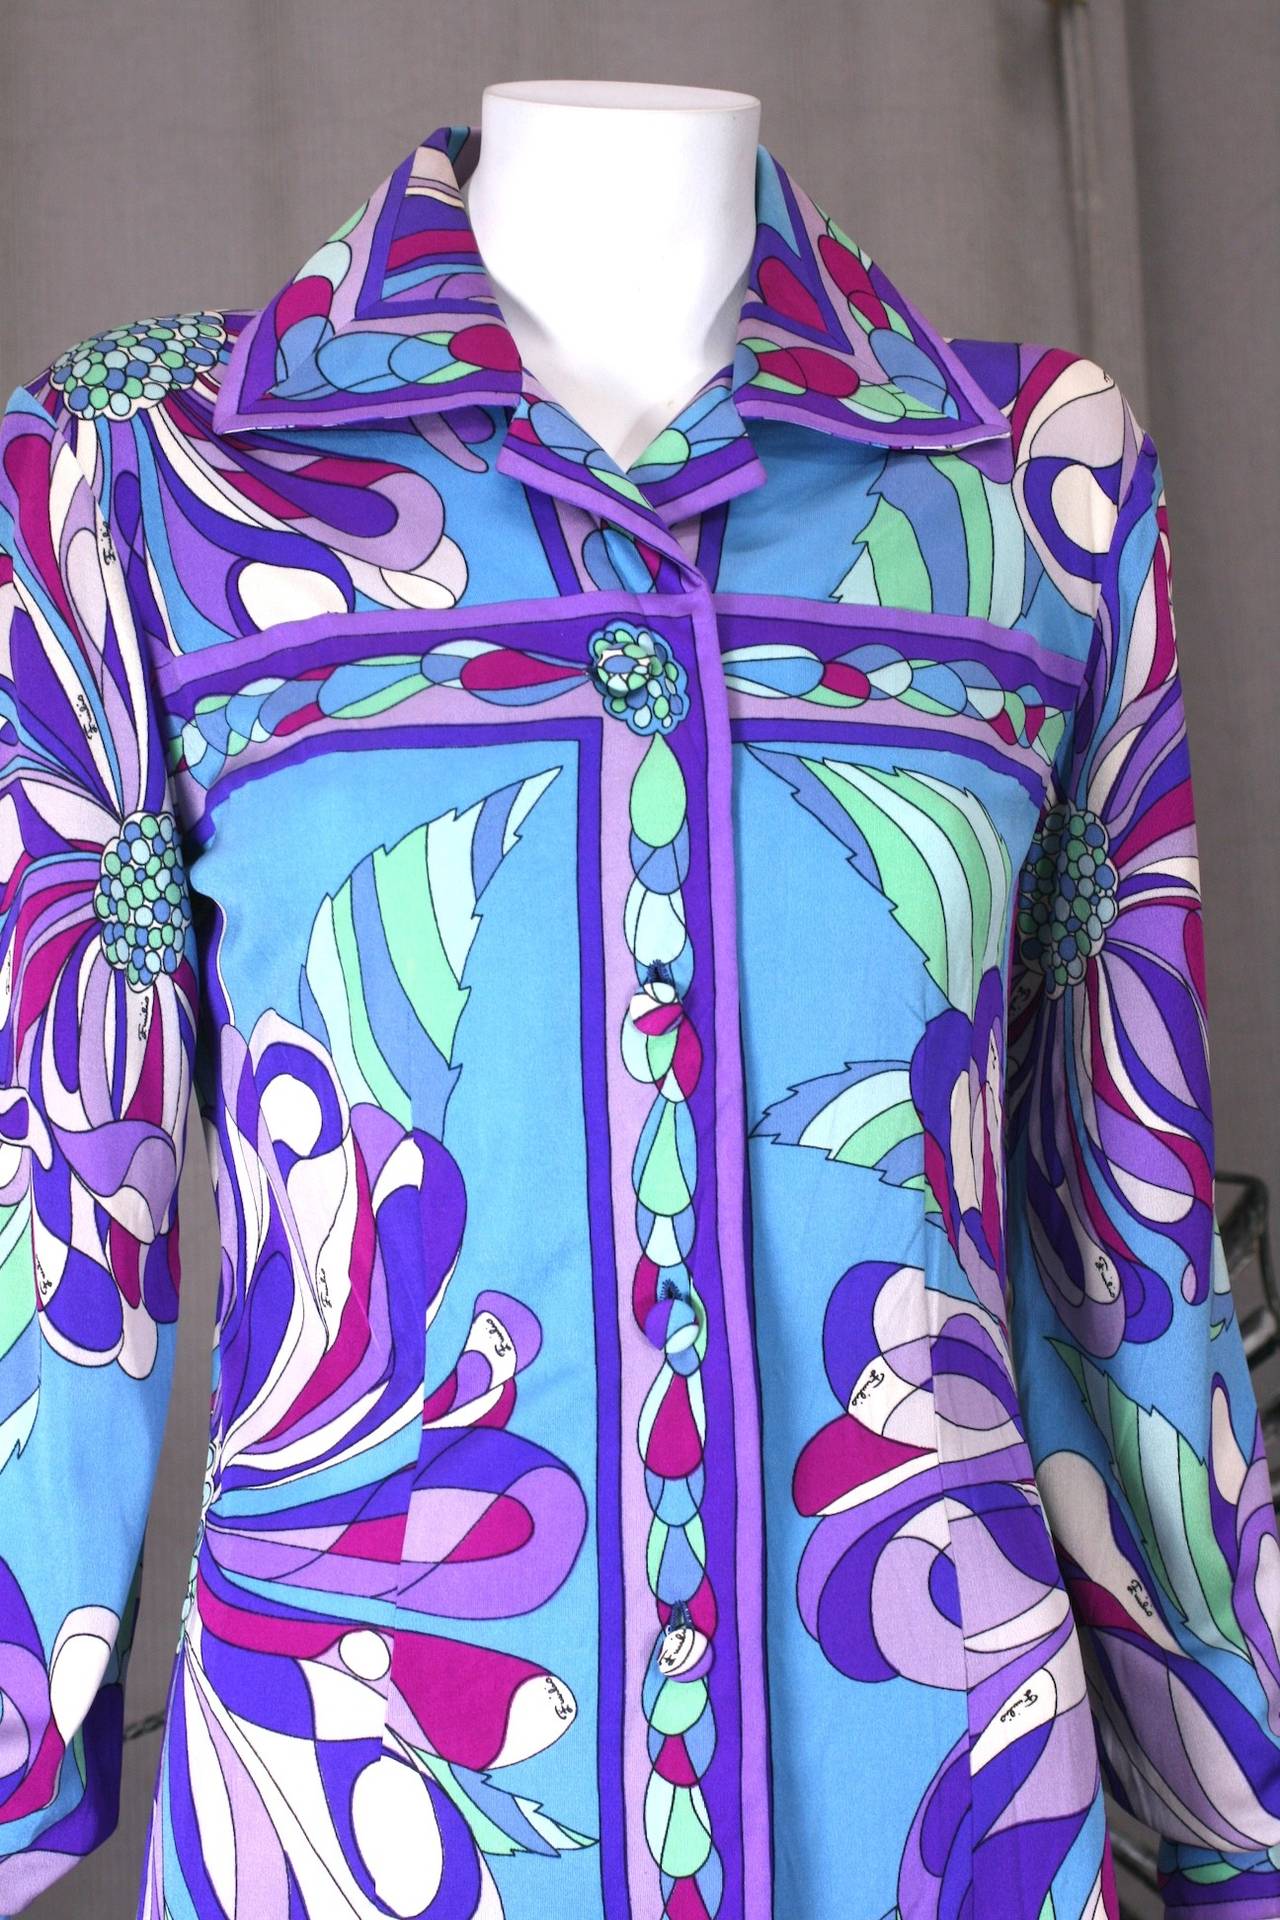 Emilio Pucci's elegante Shirtwaist mit Seitenschlitz aus super grafischem, lebendigem Seidenjersey mit Blumenmuster. Von vorne sehr zurückhaltend, aber mit einem länglichen Schlitz an der linken Hüfte, der mit verdeckten Knöpfen geöffnet und